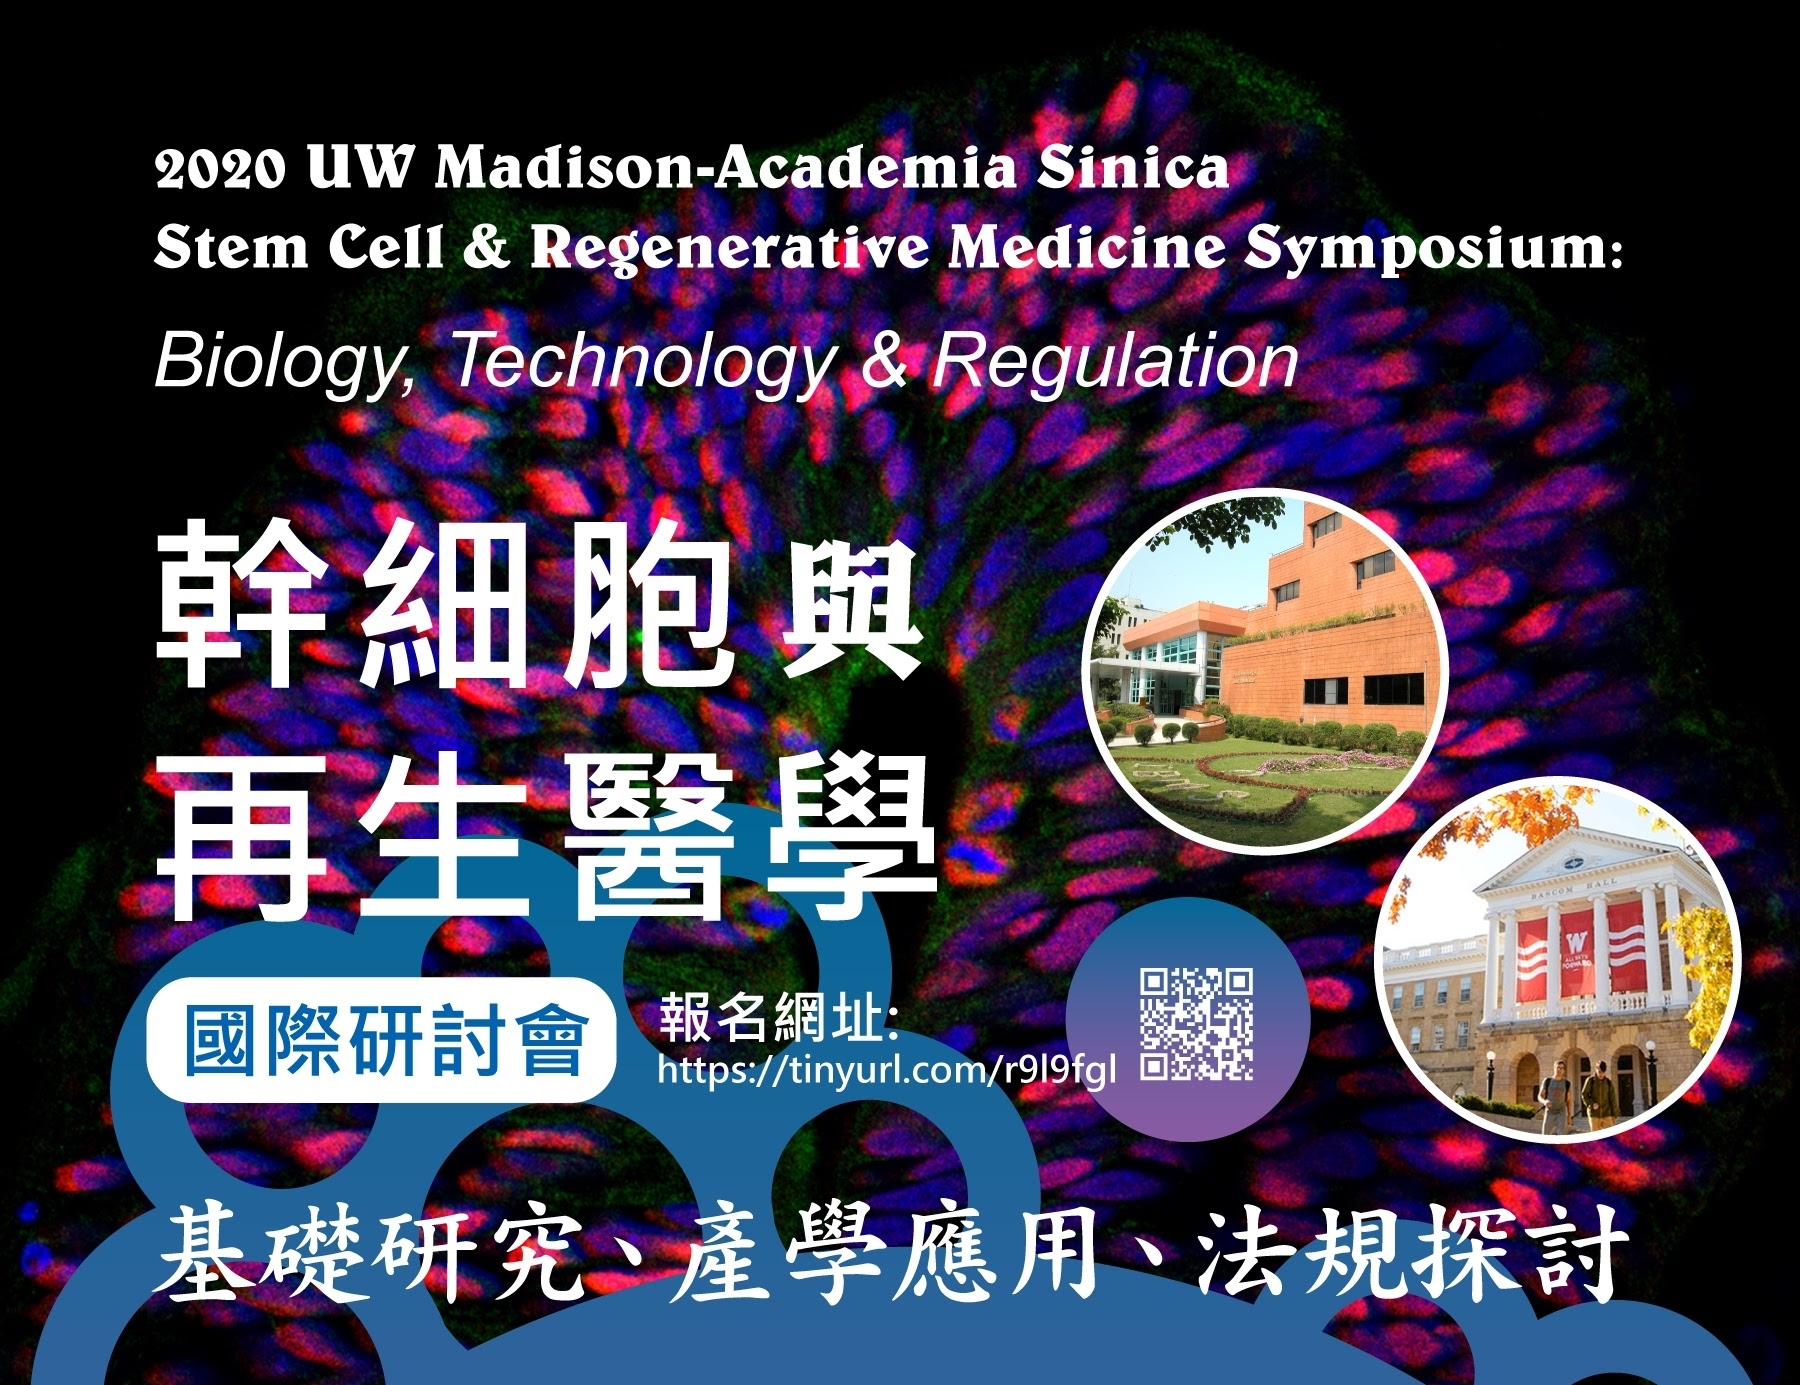 2020.03.20 l 幹細胞與再生醫學國際研討會(基礎研究、產學應用、法規探討)